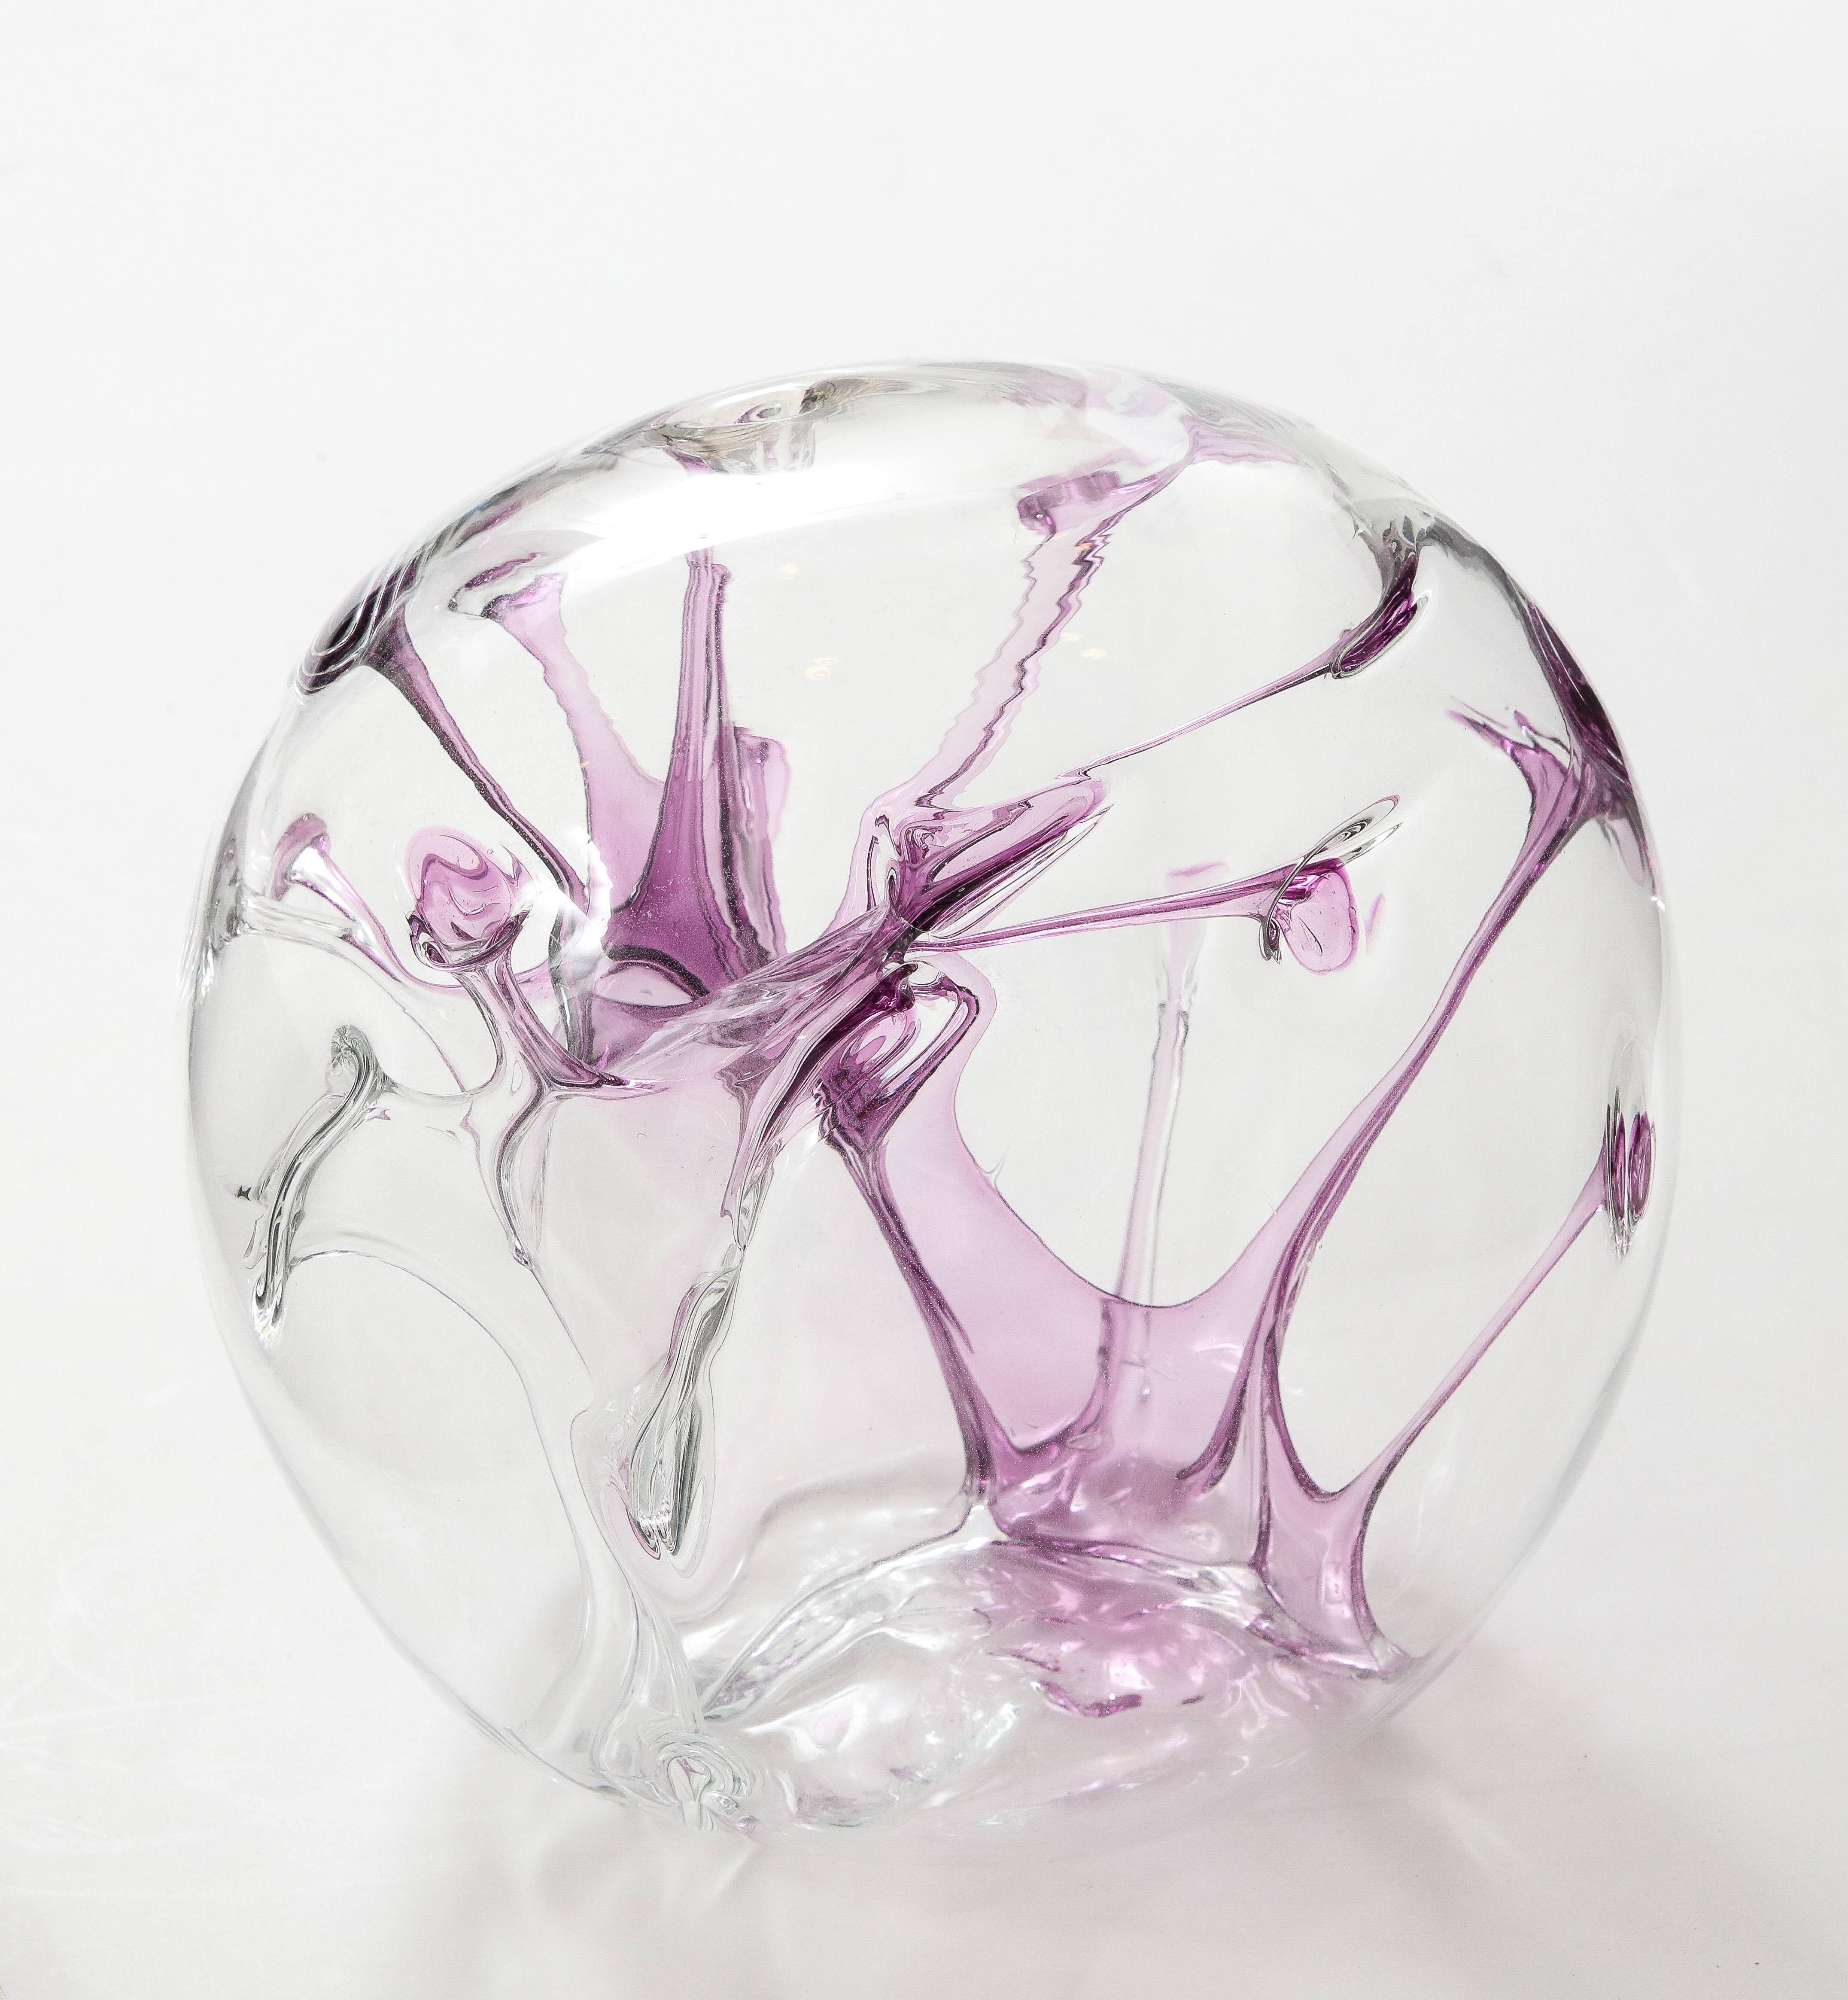 Sculpture orbe contemporaine en verre soufflé à la bouche avec fils de violette internes.
Signé Peter Bramhall.